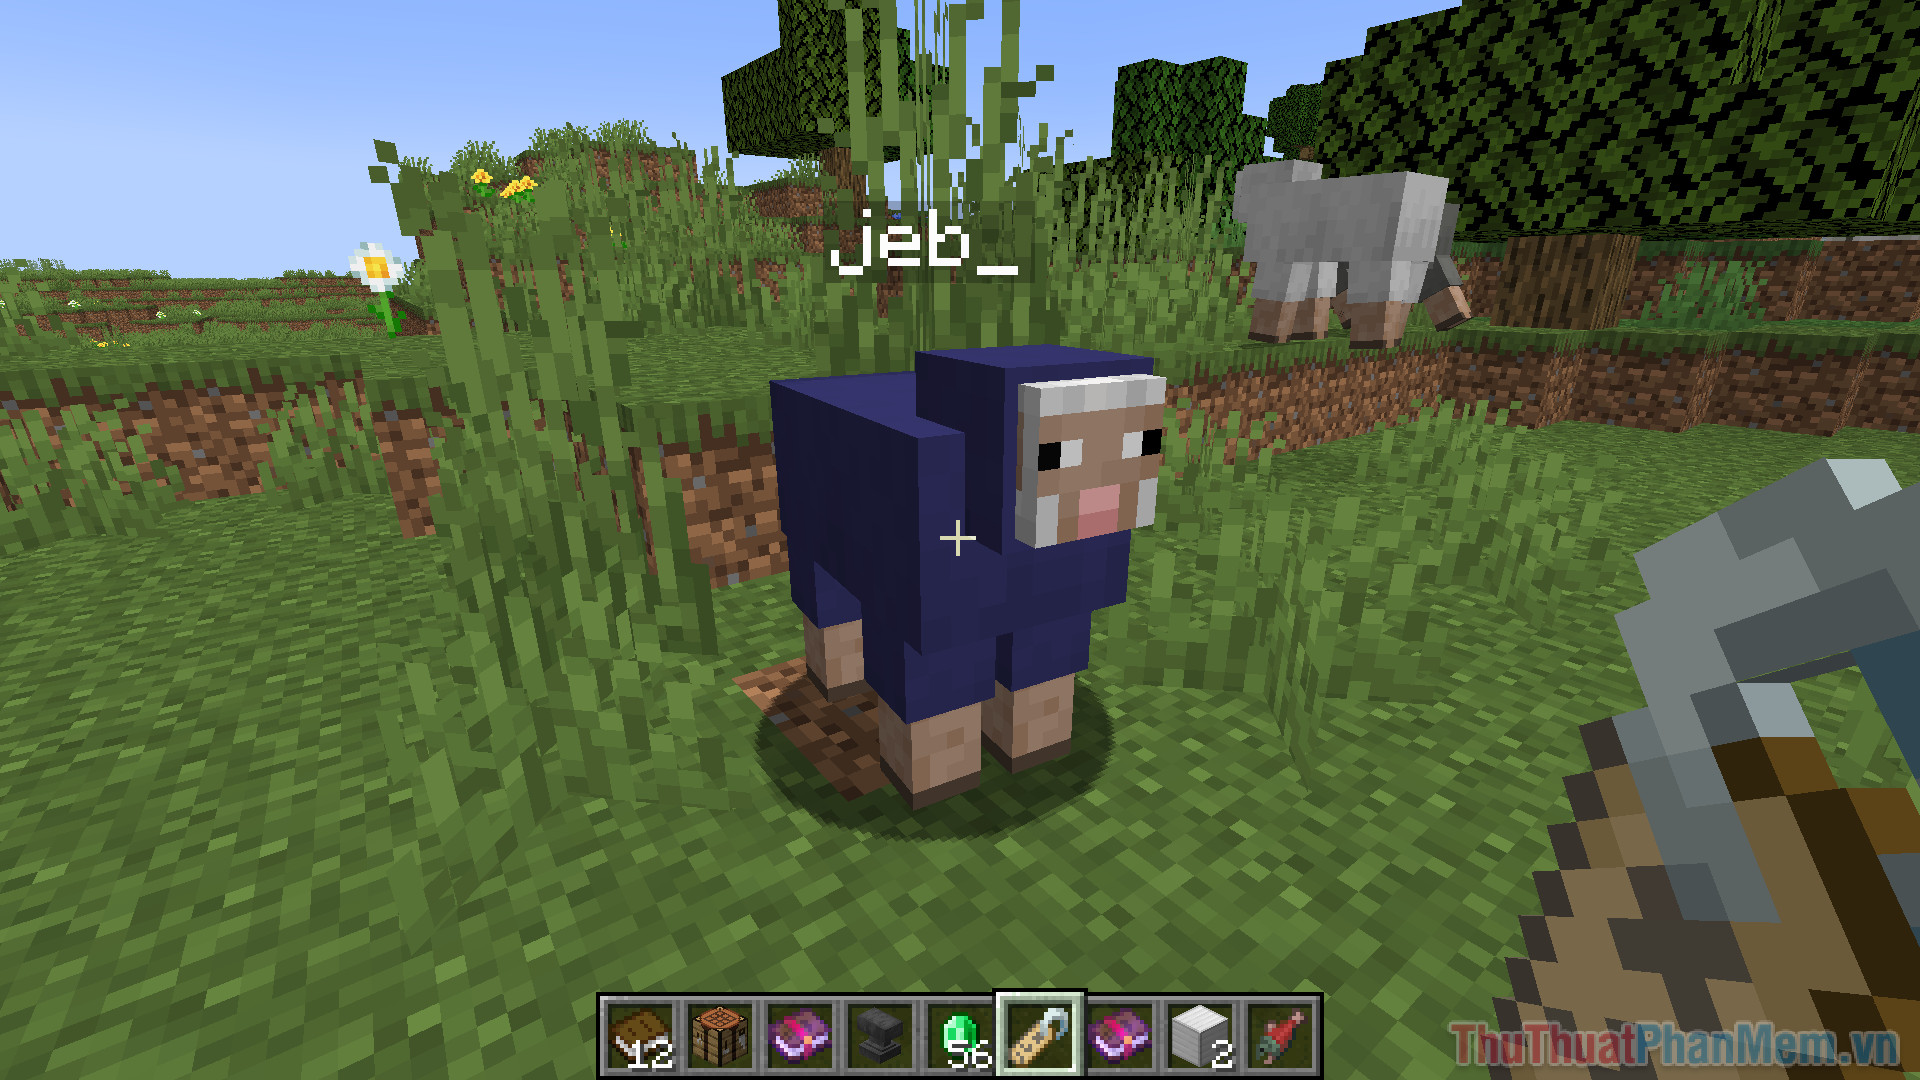 Đặt tên cho một con cừu là “jeb_” sẽ làm cho lông cừu đổi màu liên tục